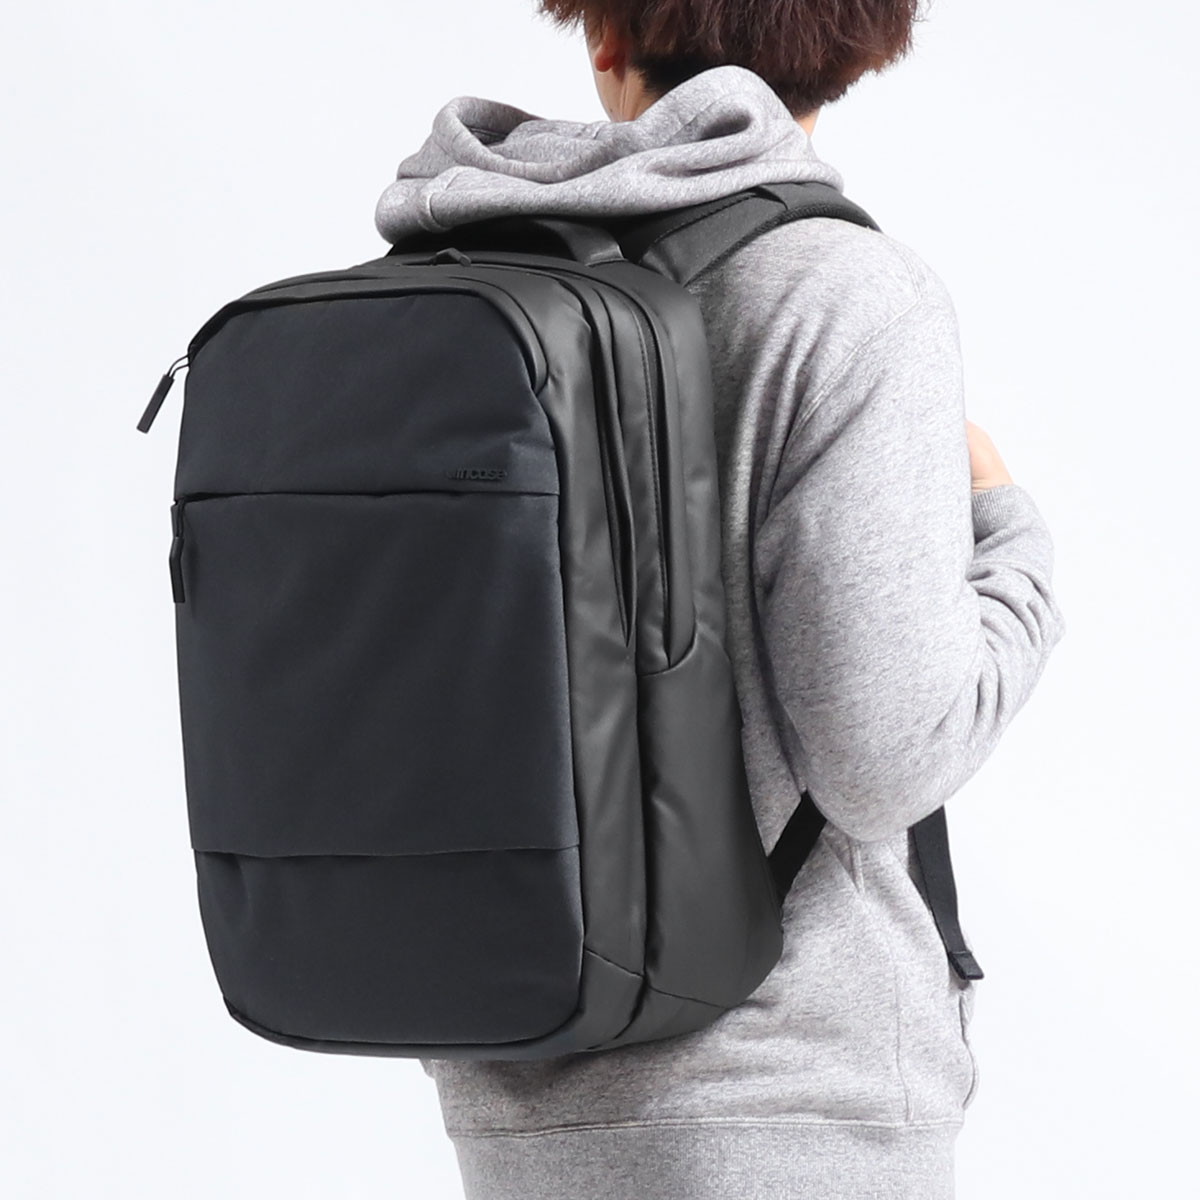 【日本正規品】incase インケース City Backpack 24.7L バックパック